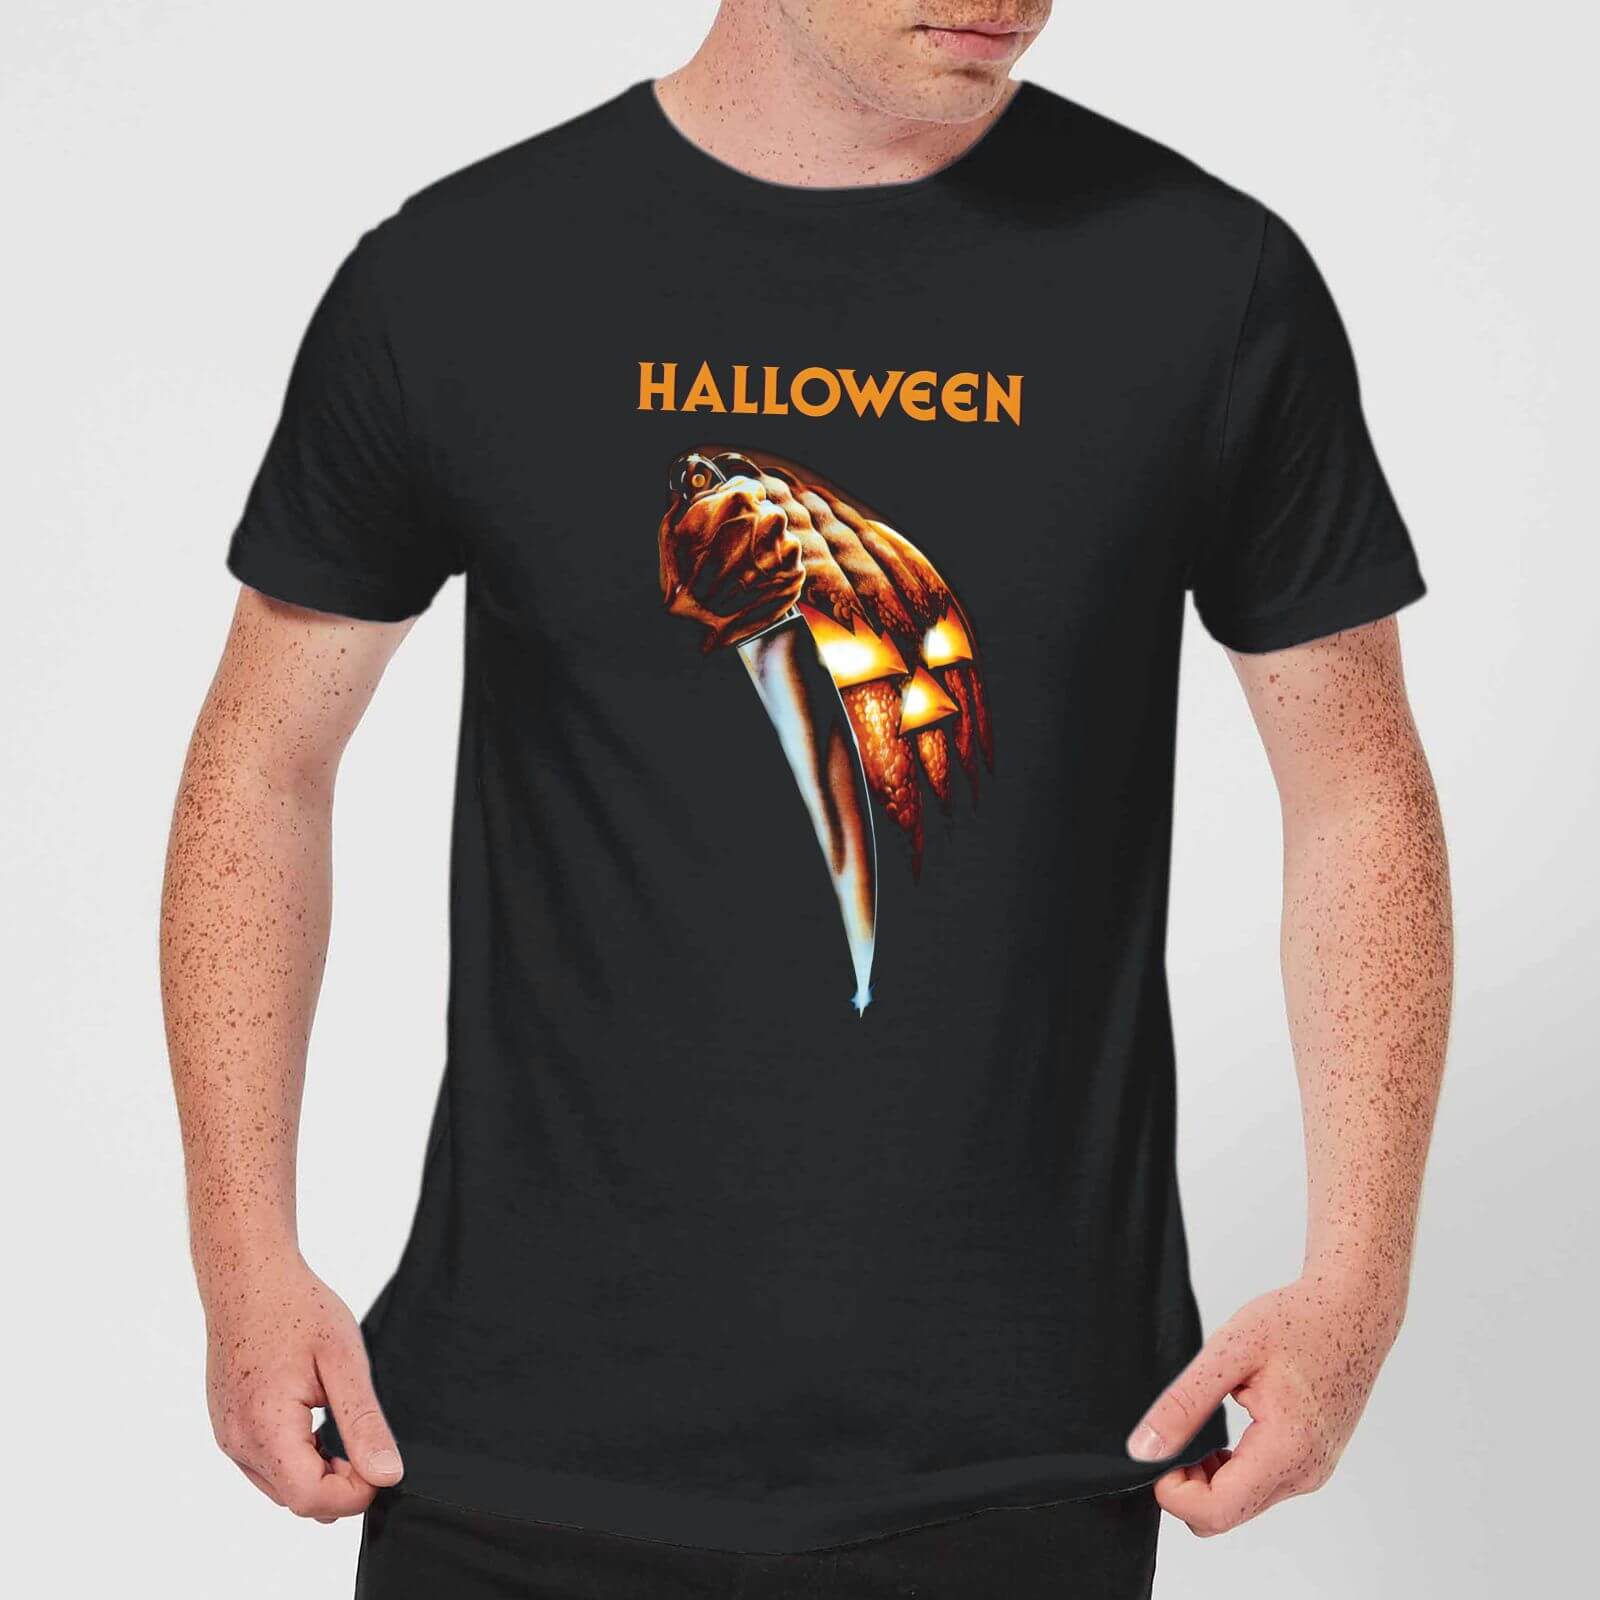 Halloween Pumpkin Men's T-Shirt - Black - XS